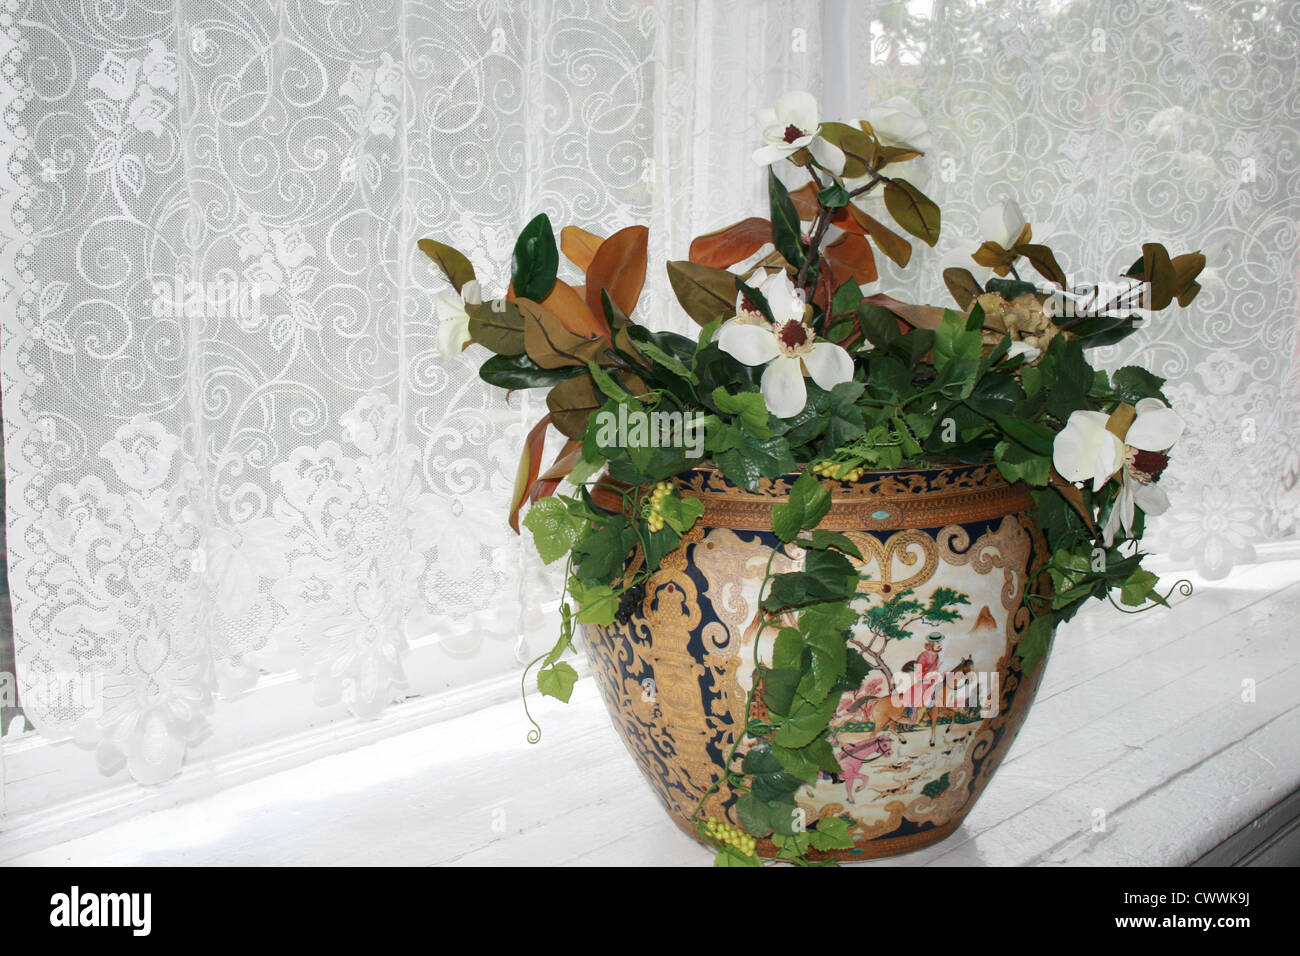 Nature morte avec fleurs dans un vase dentelle chantilly chantily Banque D'Images